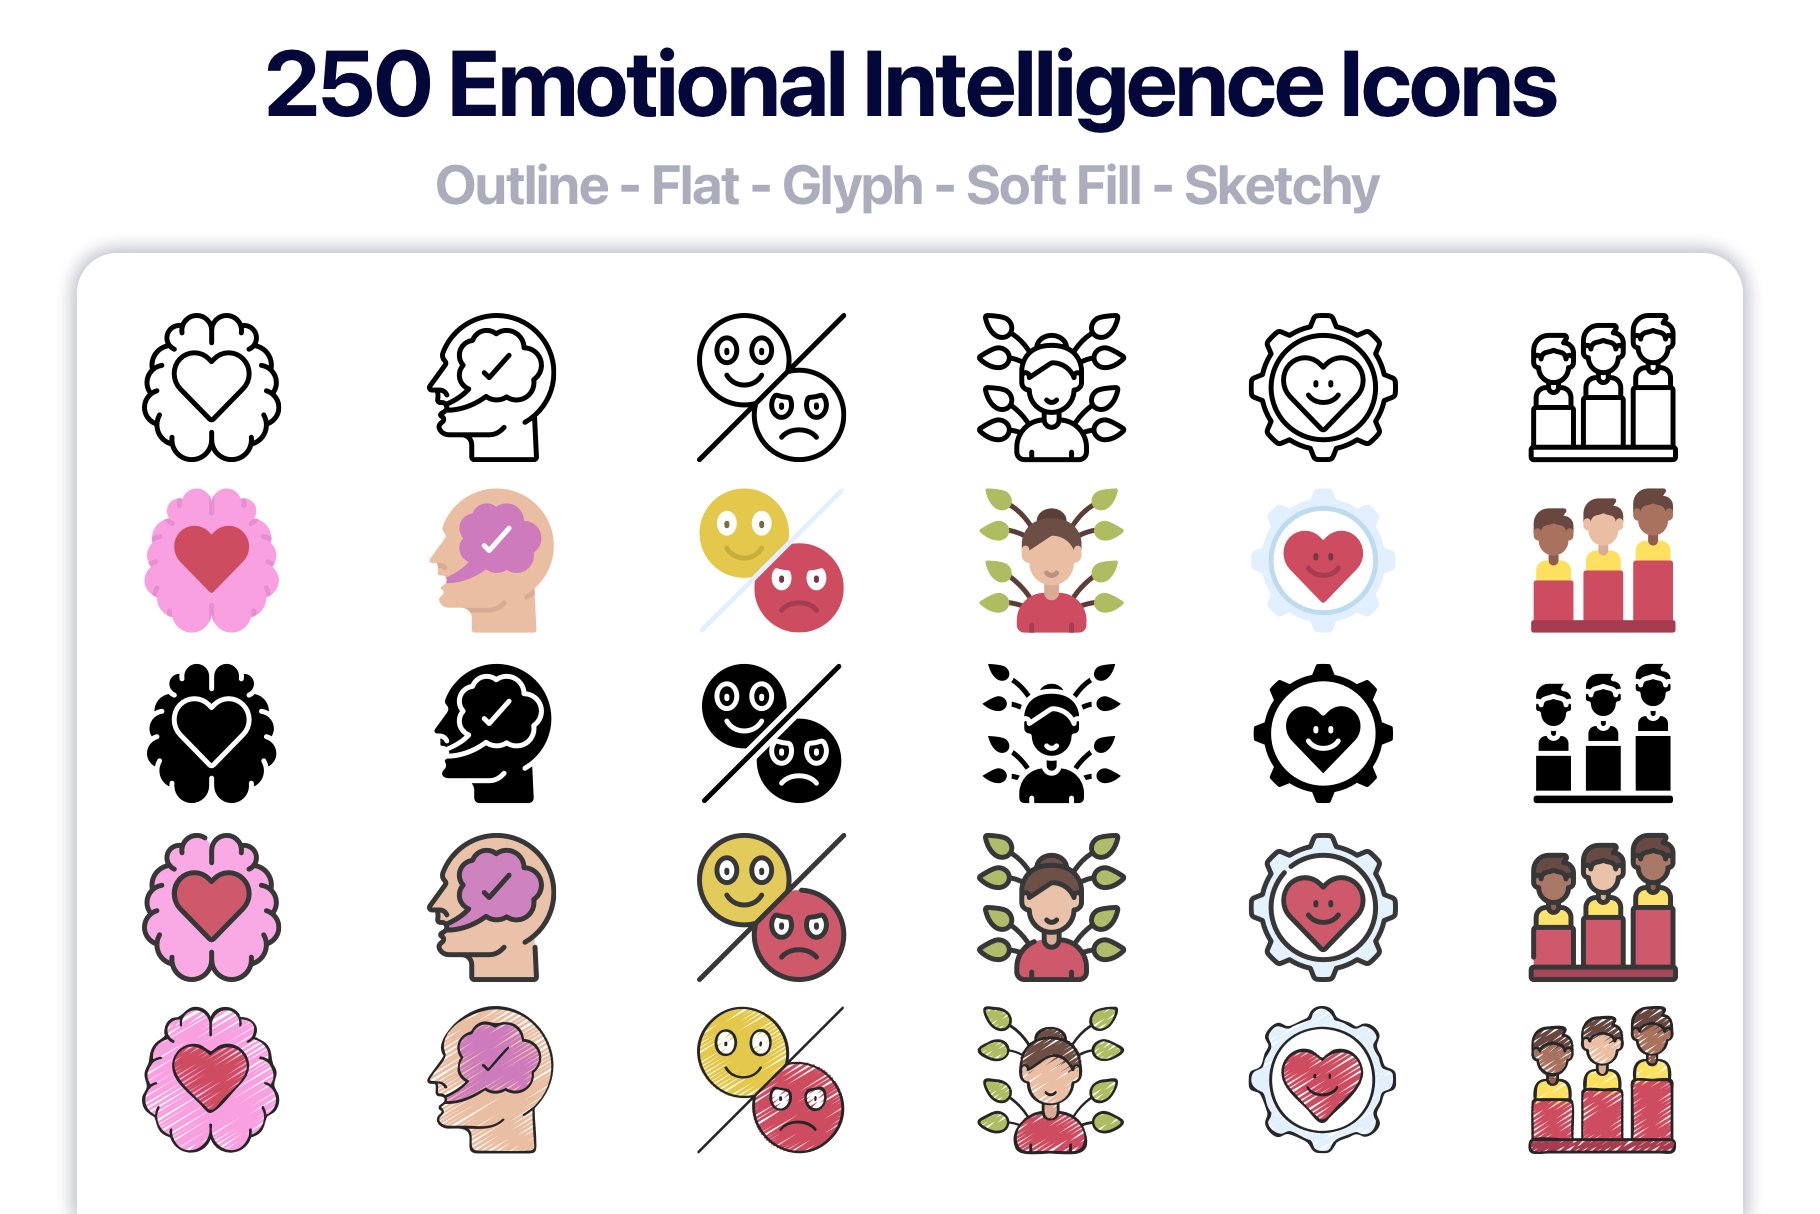 250 emotional intelligence icons.